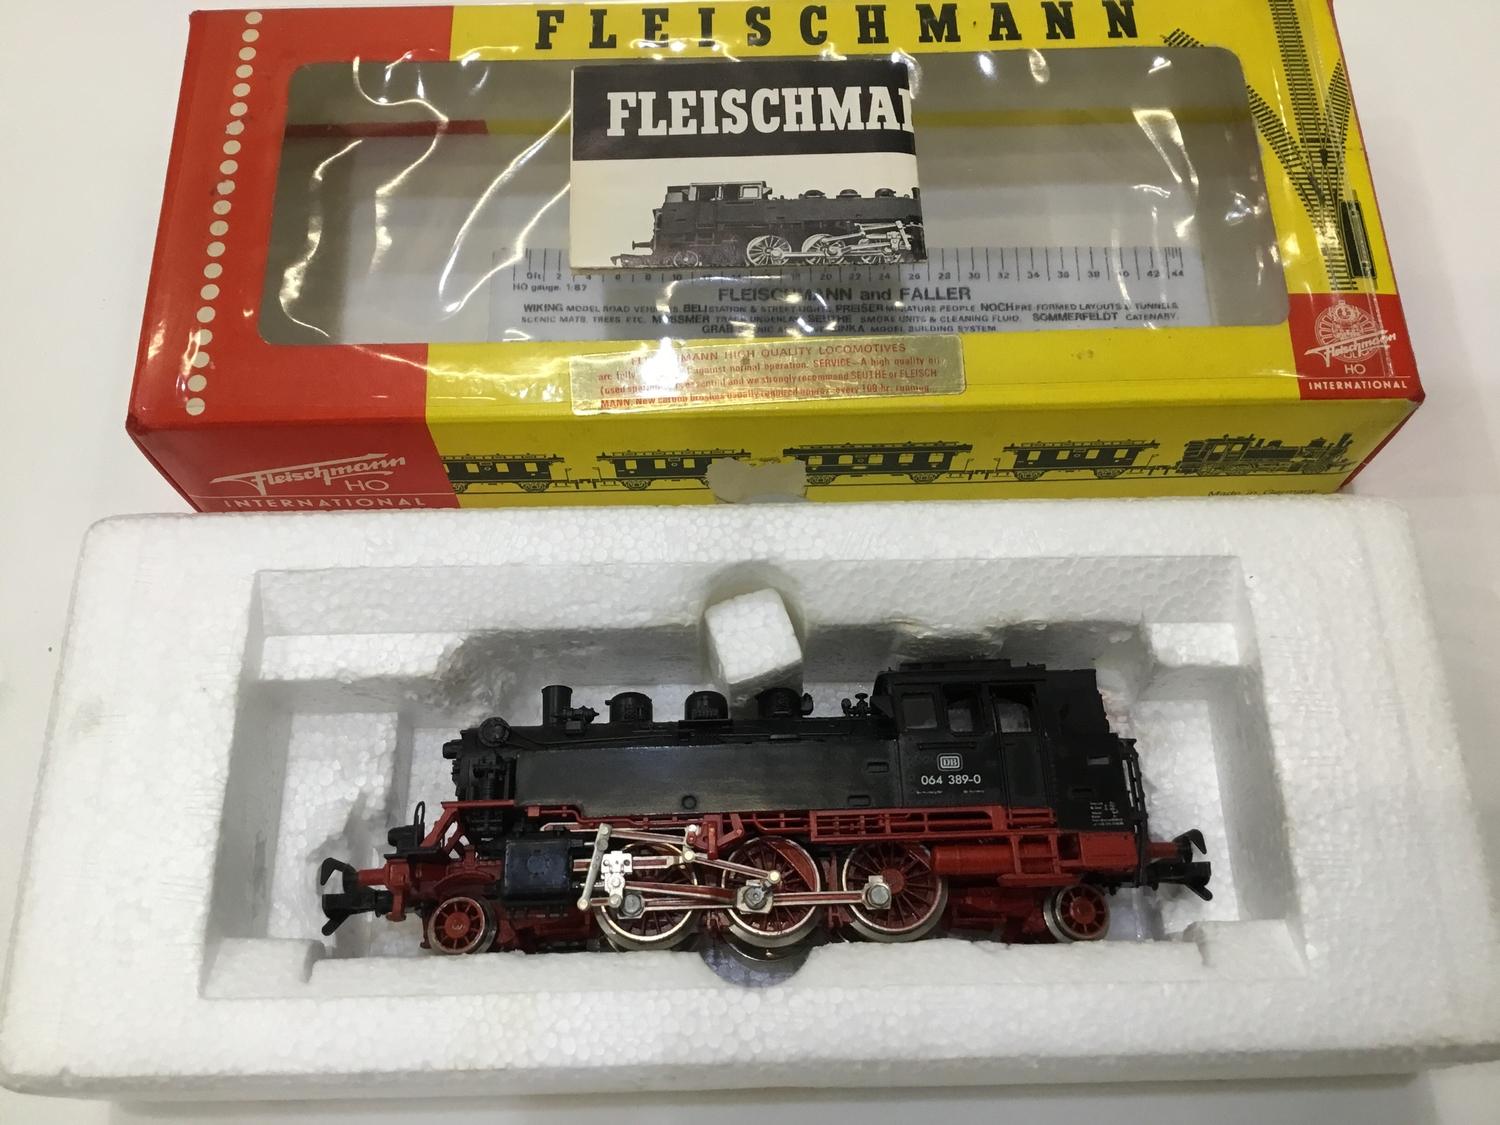 Fleischmann 4064 2-6-2 Locomotive HO / OO Gauge - Image 2 of 4